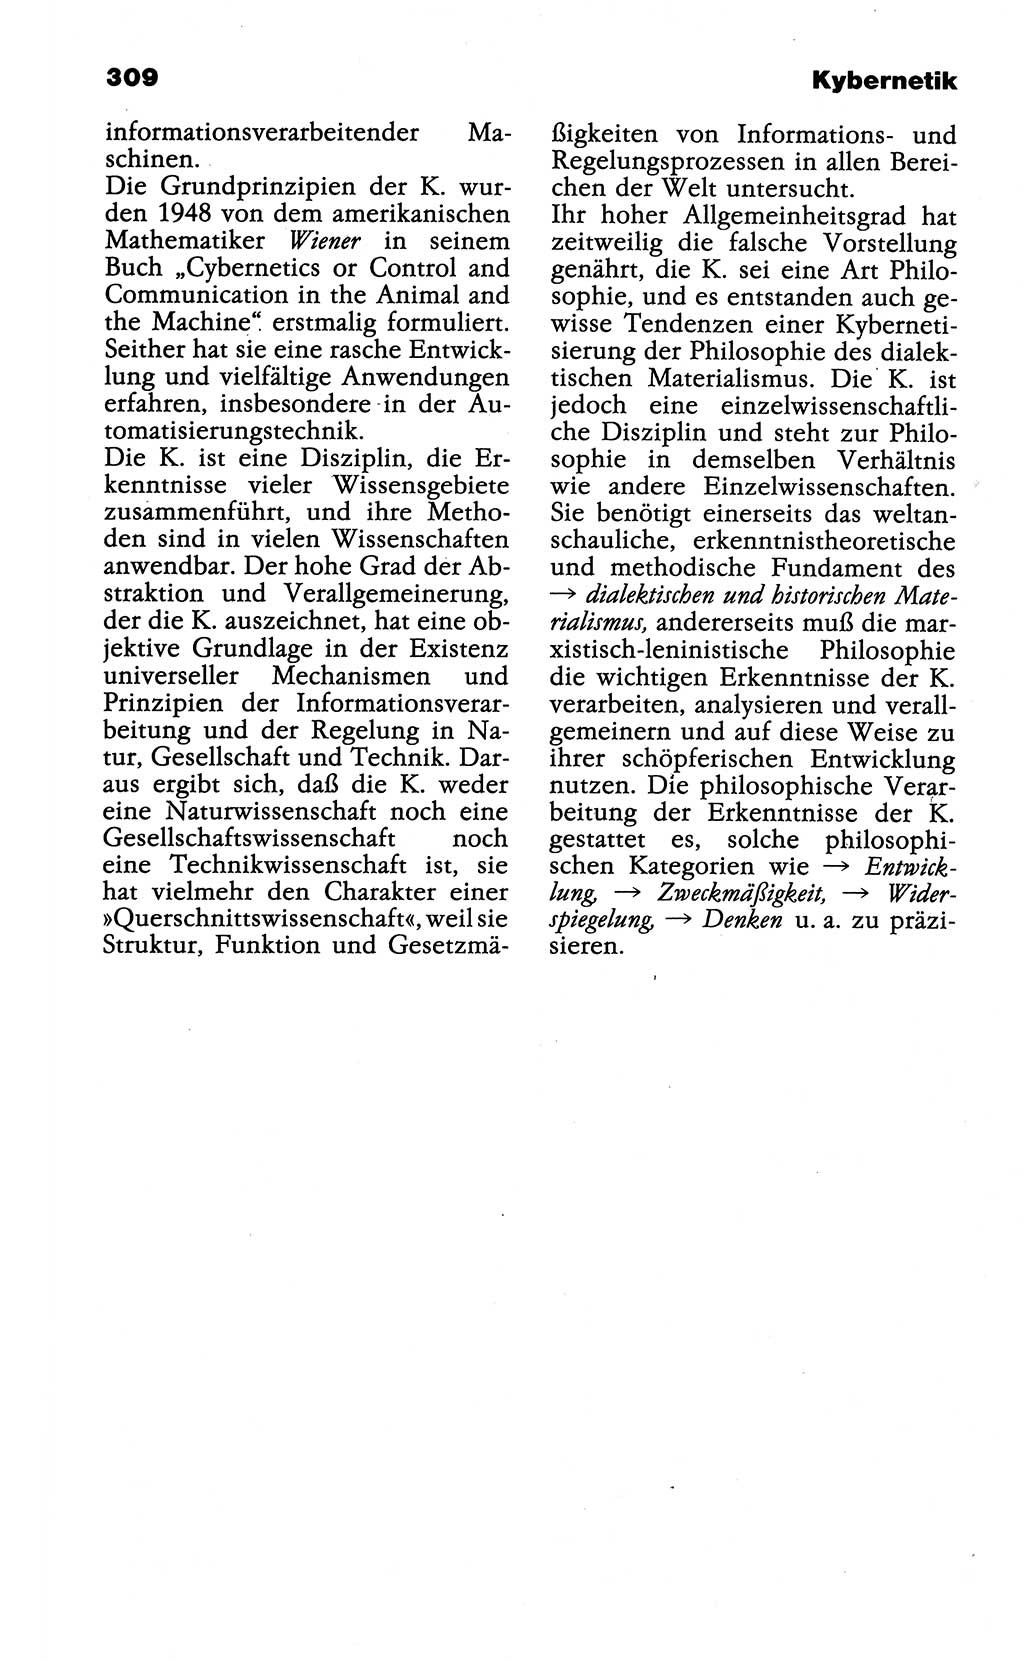 Wörterbuch der marxistisch-leninistischen Philosophie [Deutsche Demokratische Republik (DDR)] 1985, Seite 309 (Wb. ML Phil. DDR 1985, S. 309)